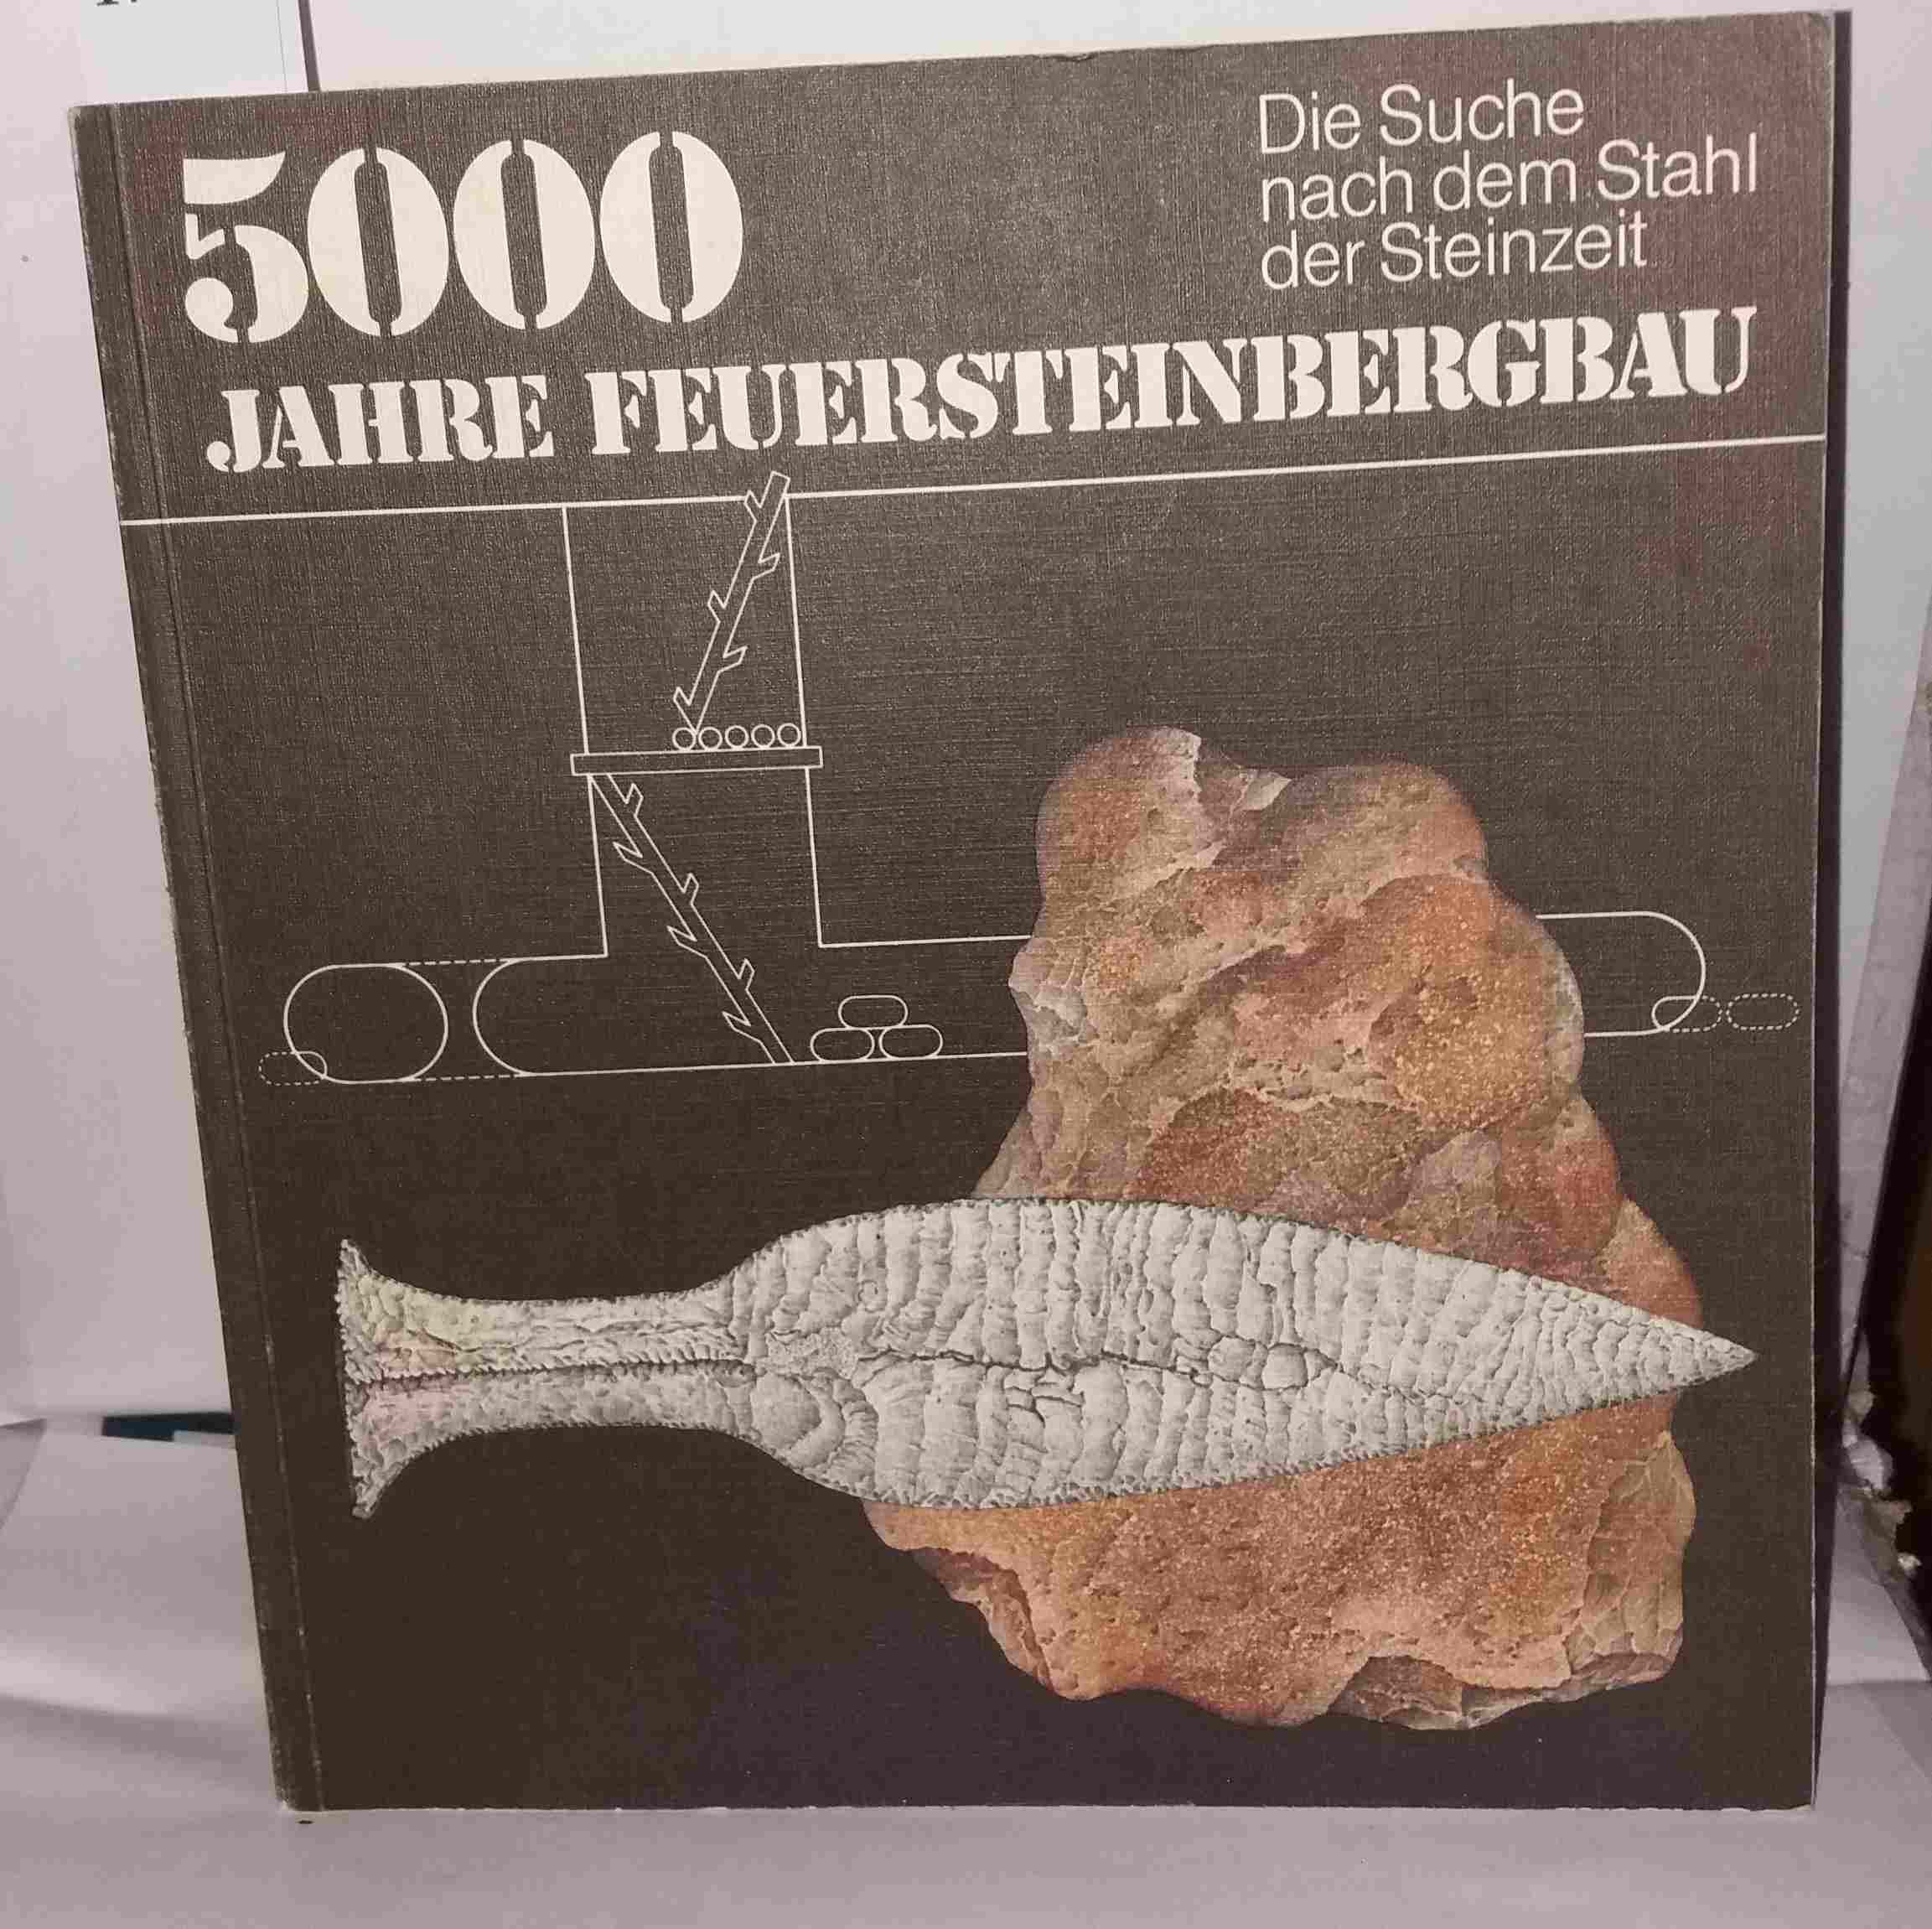 5000 Jahre Feuersteinbergbau. Die Suche nach dem Stahl der Steinzeit - Unknown Author